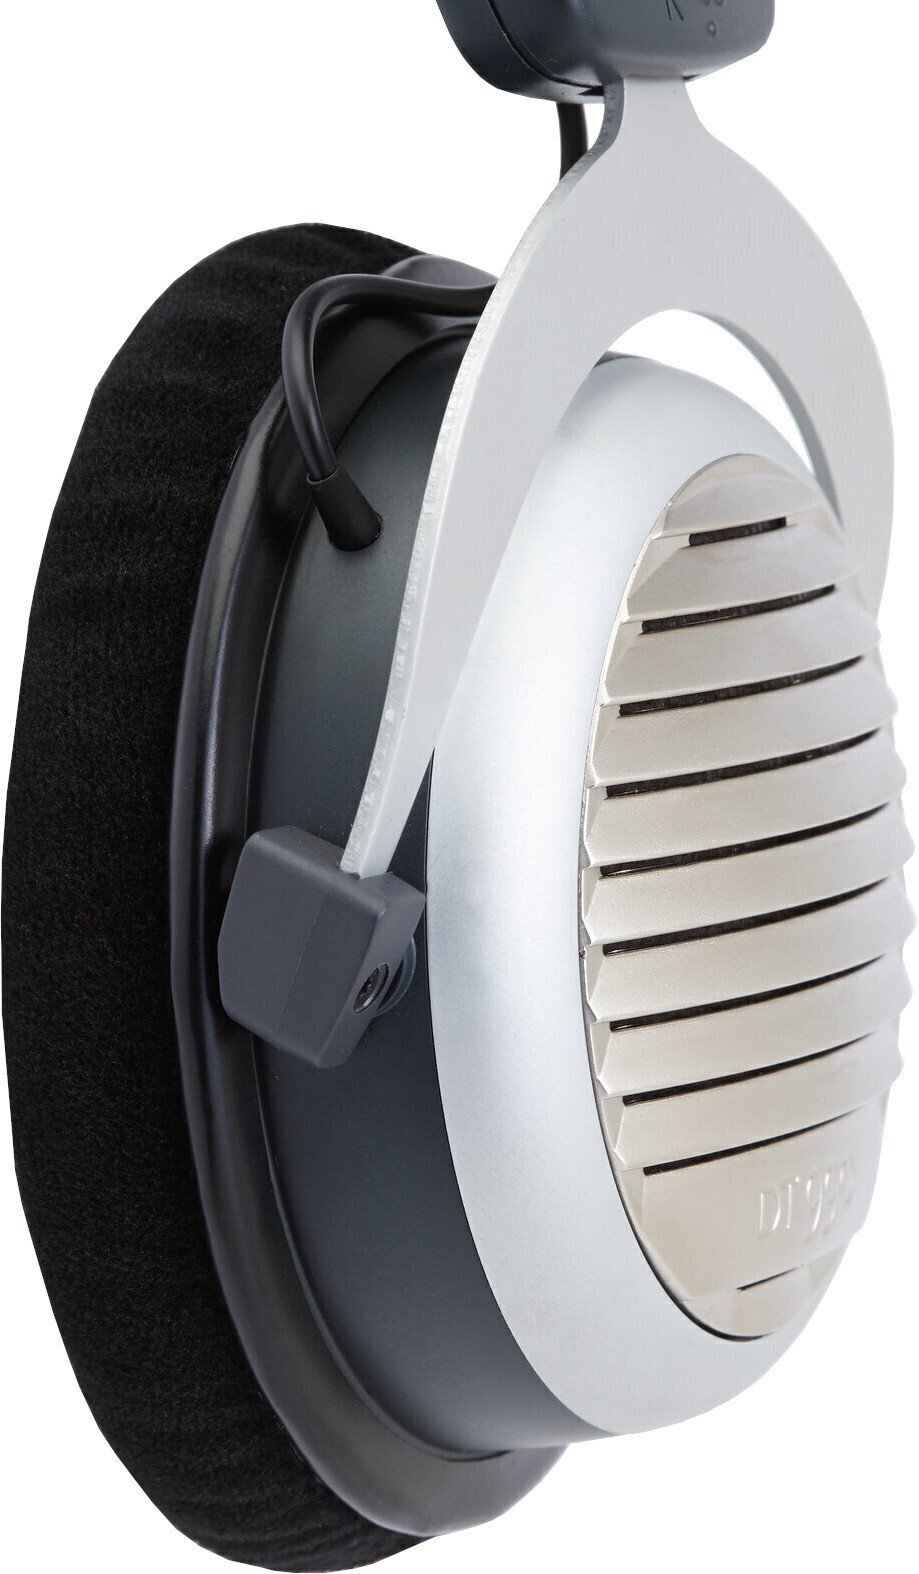 Ear Pads for headphones Earpadz by Dekoni Audio EPZ-DT78990-VL Ear Pads for headphones DT770-DT880-DT990 Black